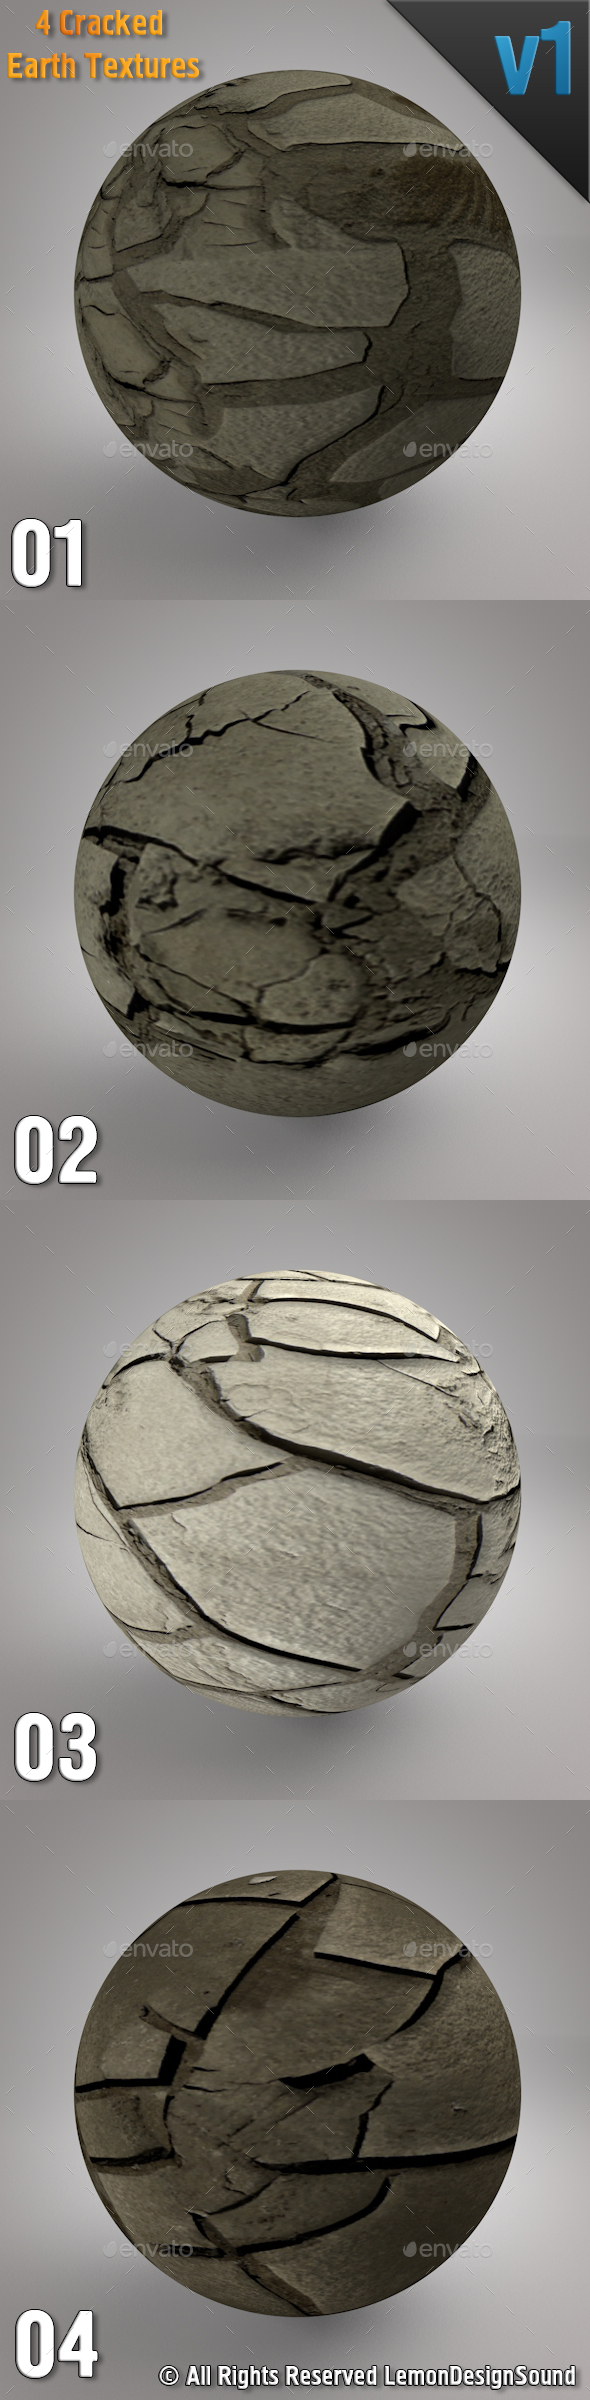 4 Cracked Earth - 3Docean 19450235